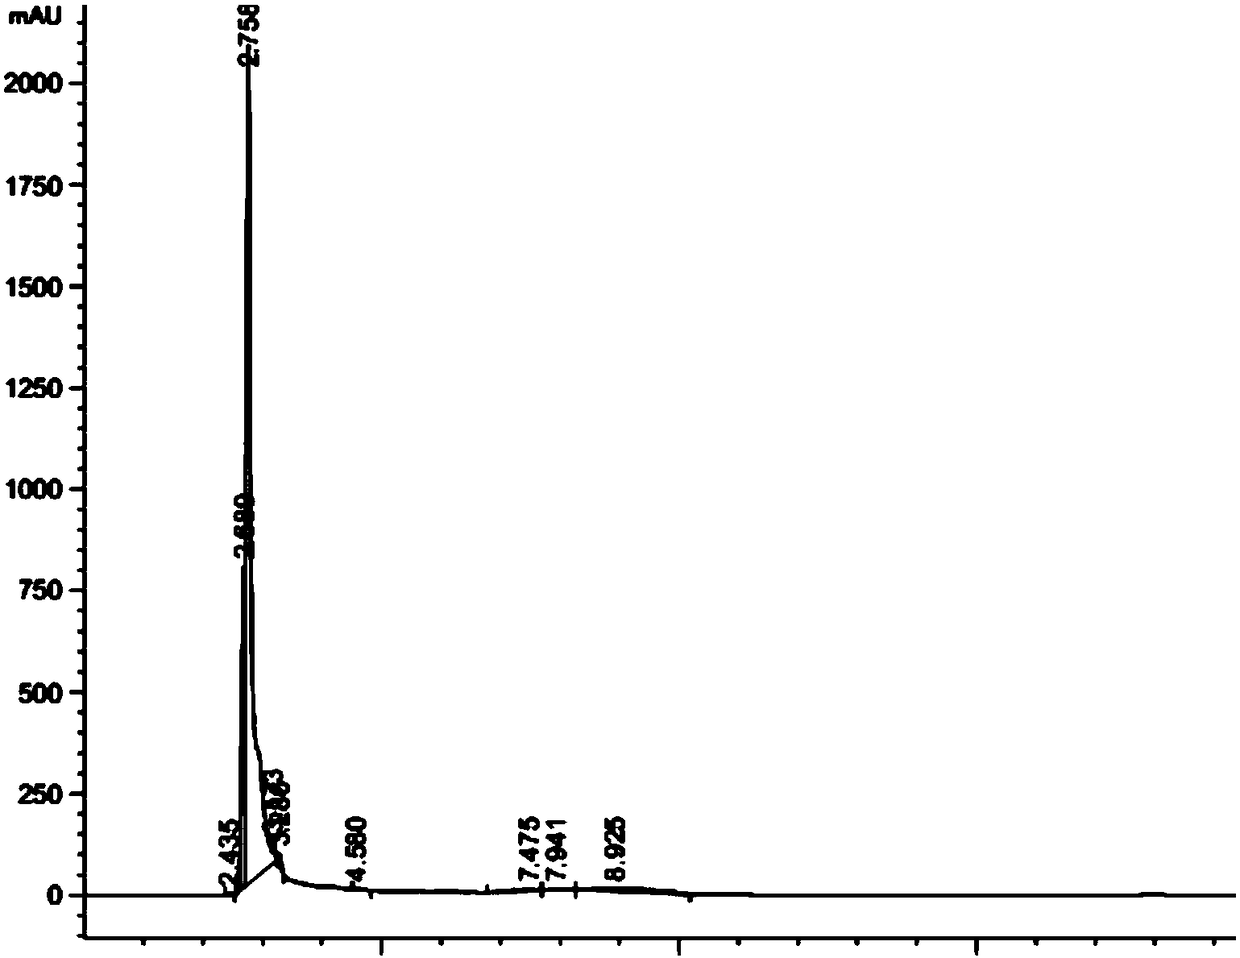 High performance liquid chromatography method for 3-nitrophthalic acid